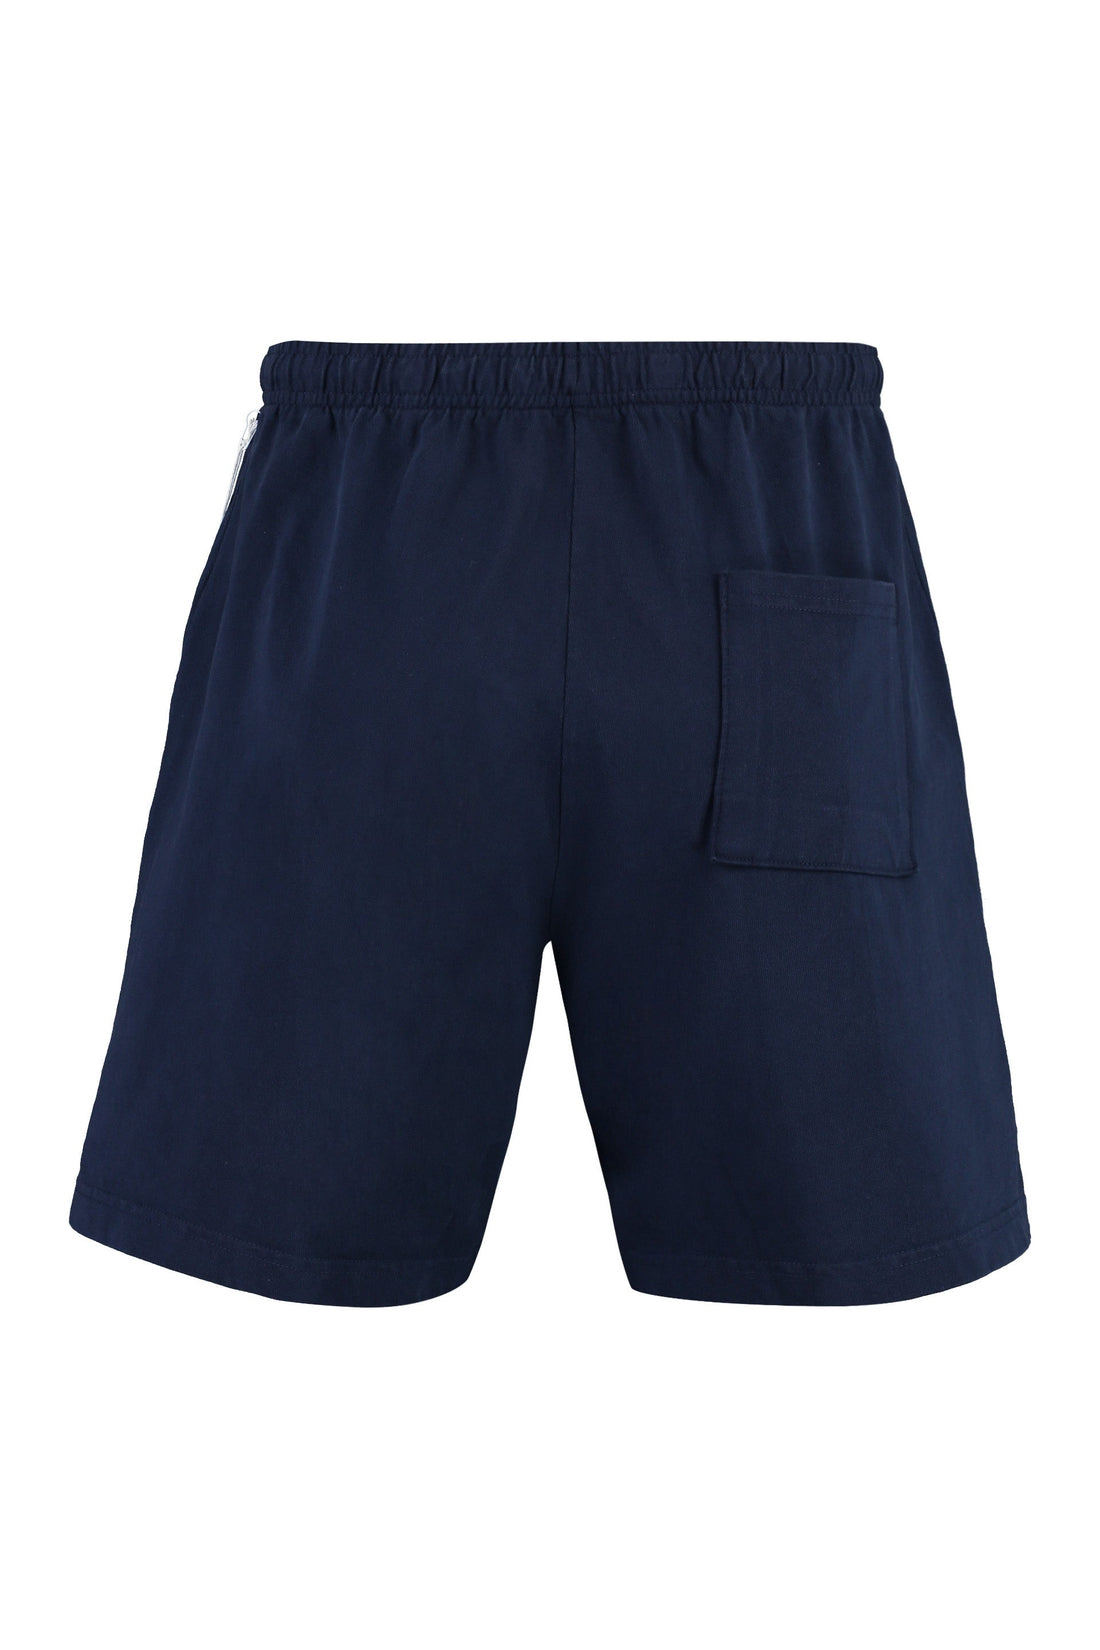 Sporty & Rich-OUTLET-SALE-Printed cotton shorts-ARCHIVIST